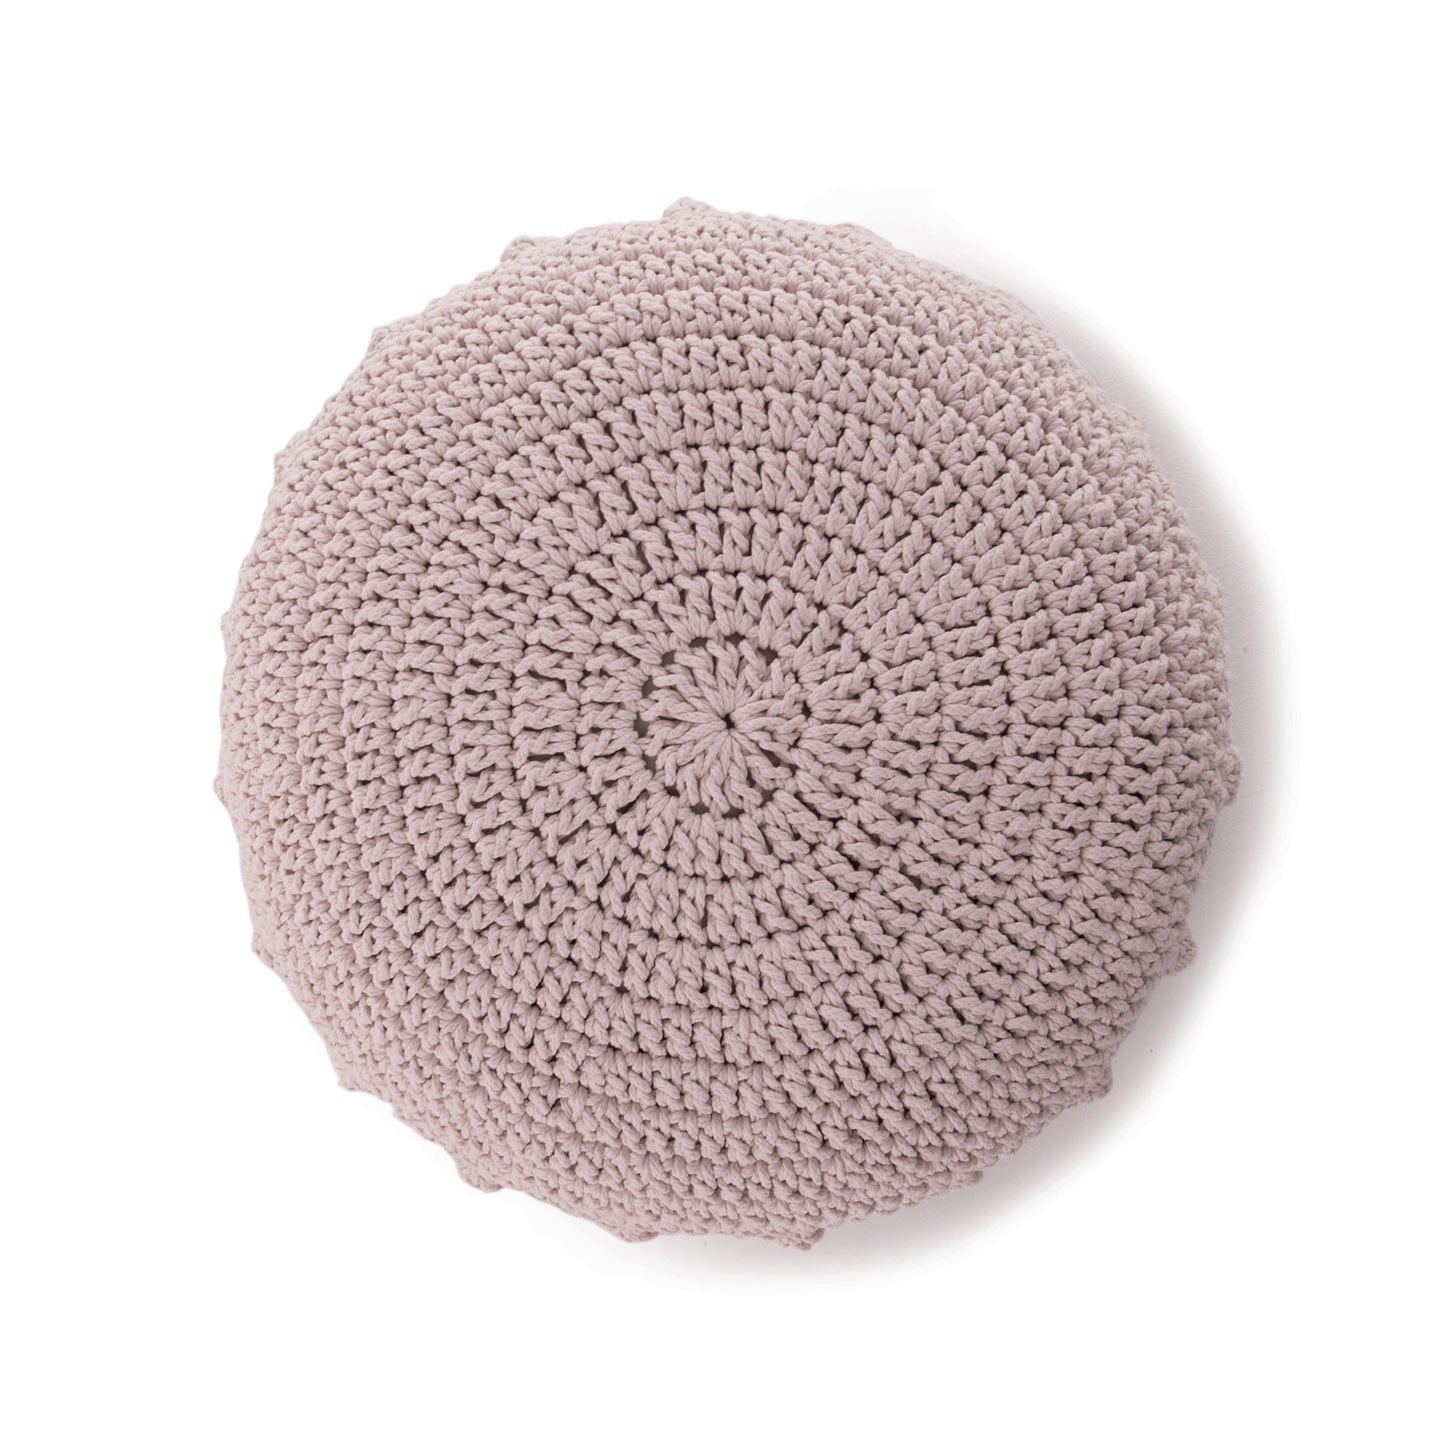 Puff Disco em crochê Rose, com fio 100% algodão.  Fechamento com zíper, possibilitando a remoção da capa para lavagem.  Dimensões: Altura - 20cm; Diâmetro - 85cm. 